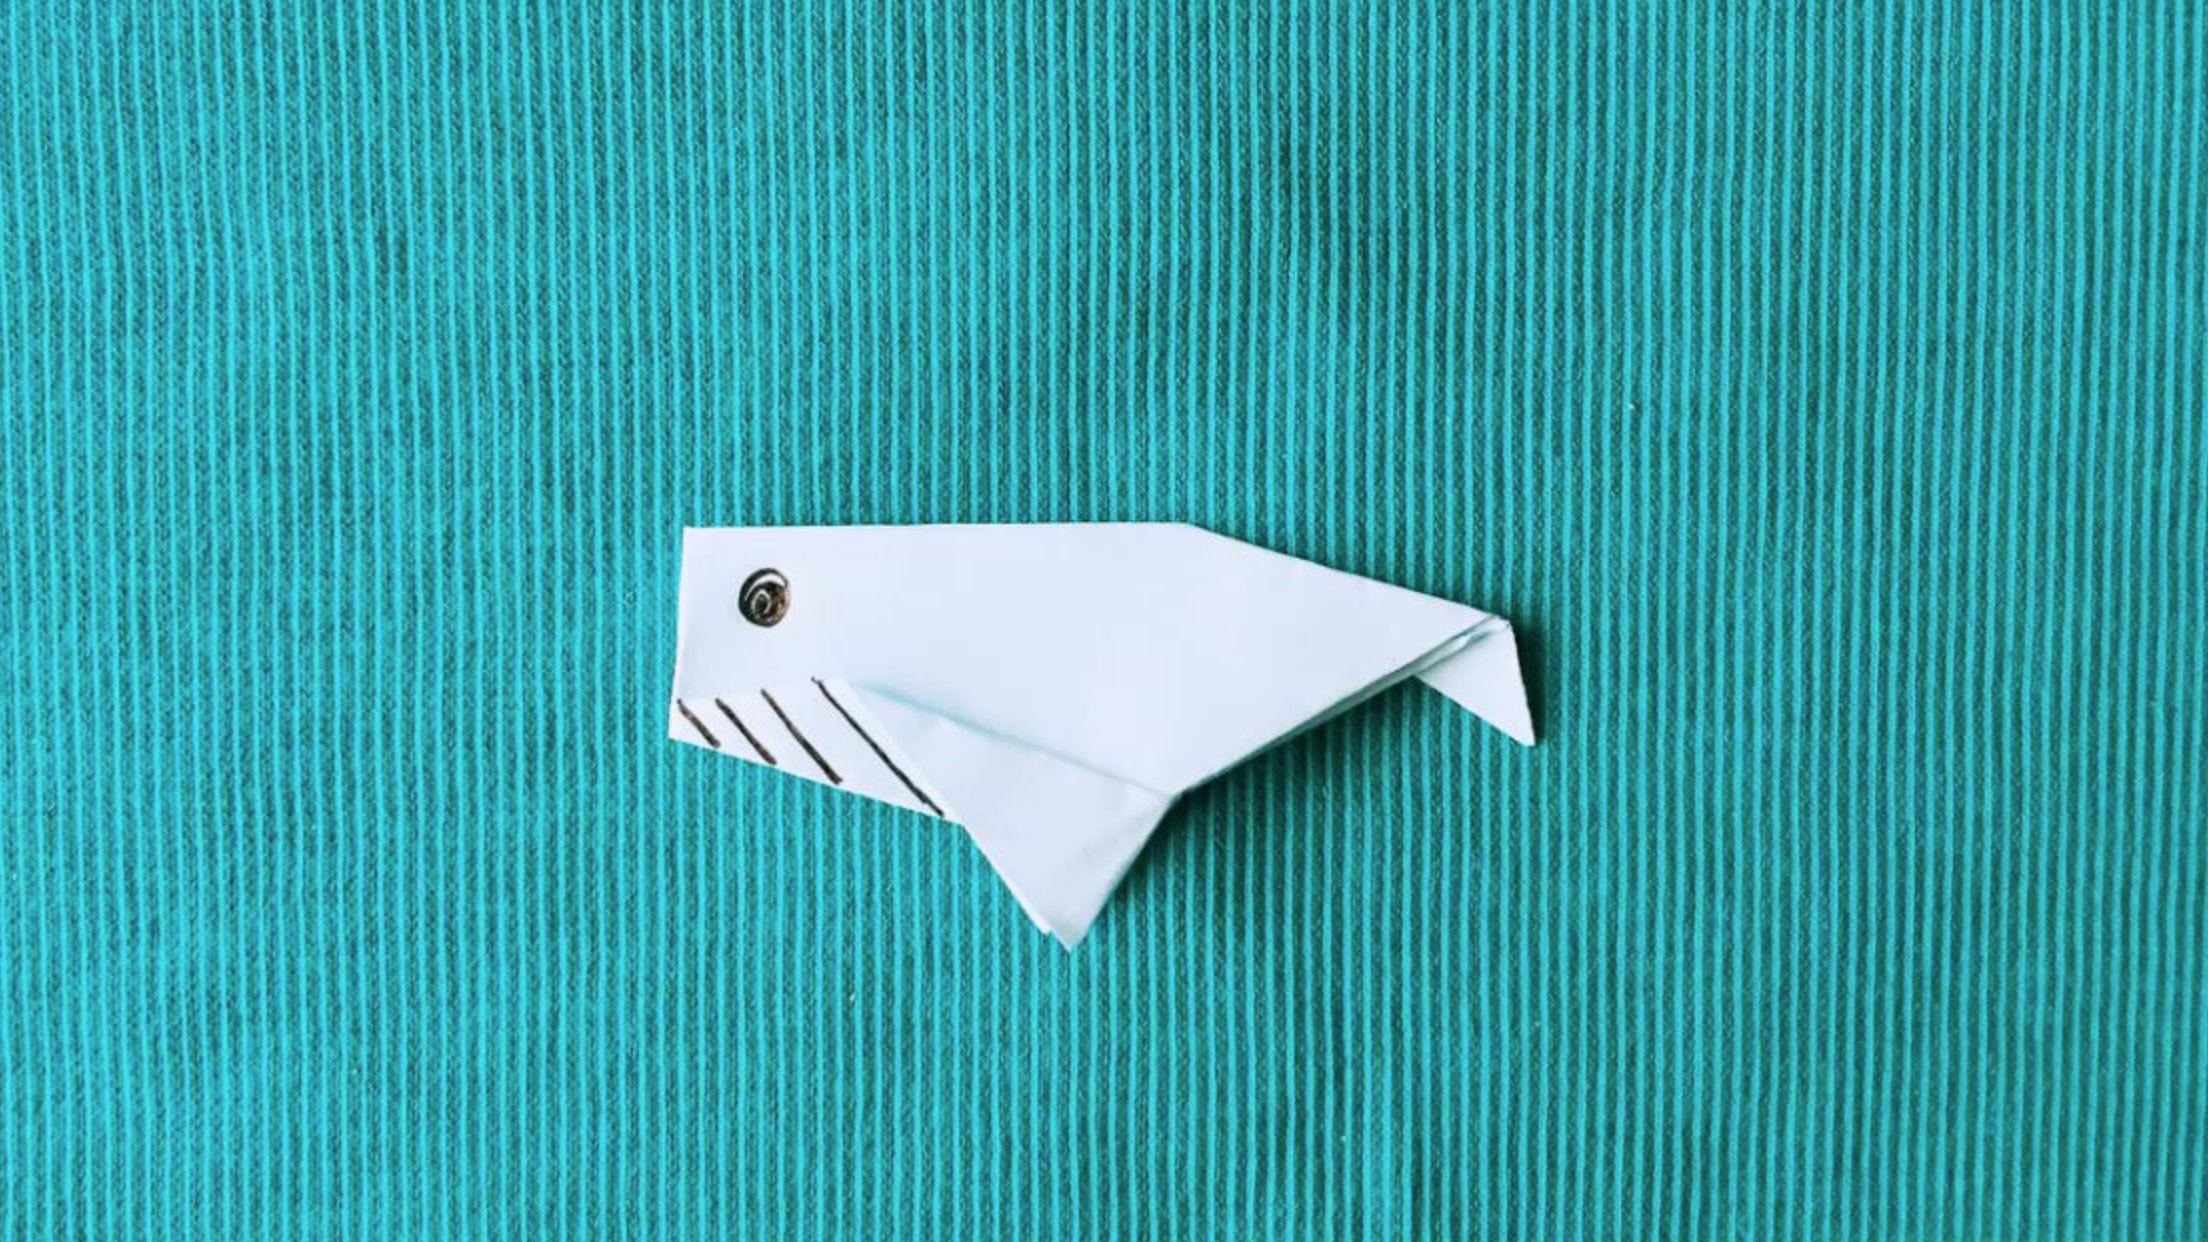 炫酷的折纸鲨鱼,简单易懂快来学